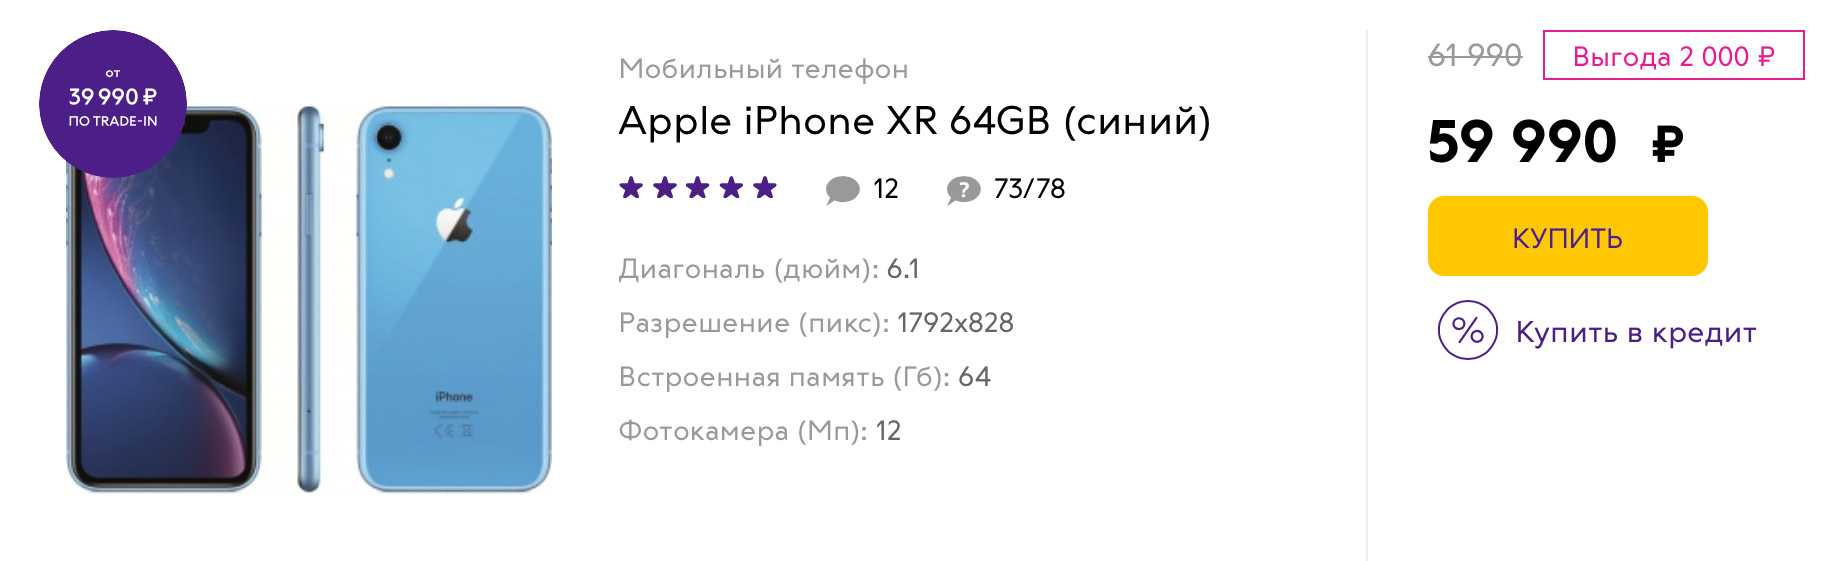 iPhone XR в Связном